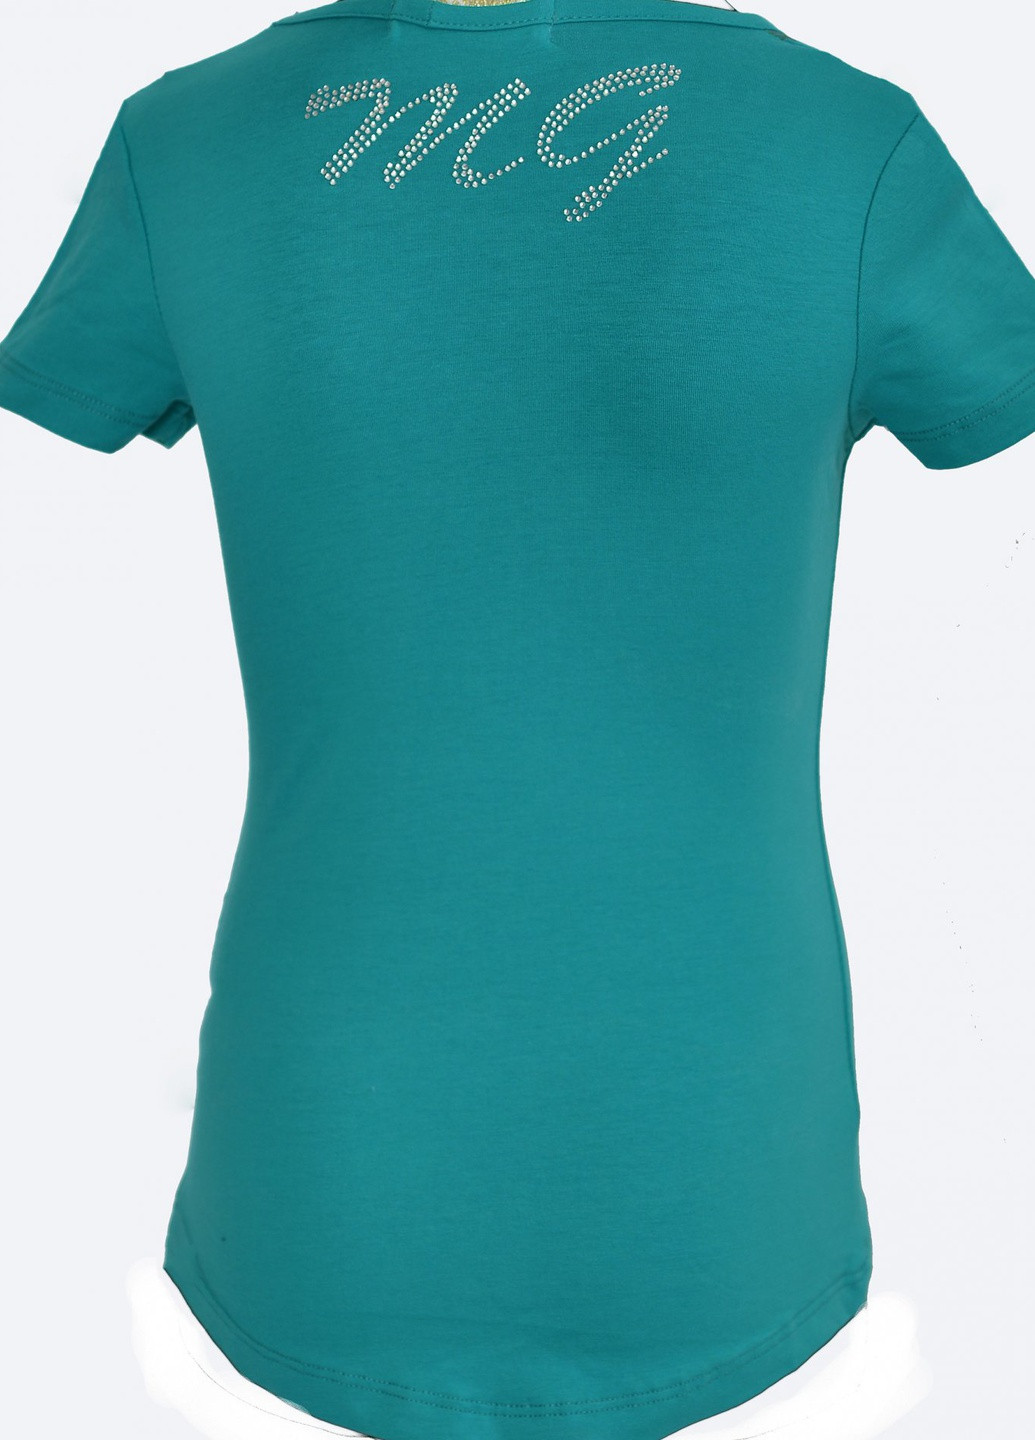 Зеленая футболки футболка на дівчаток (101)11855-736 Lemanta